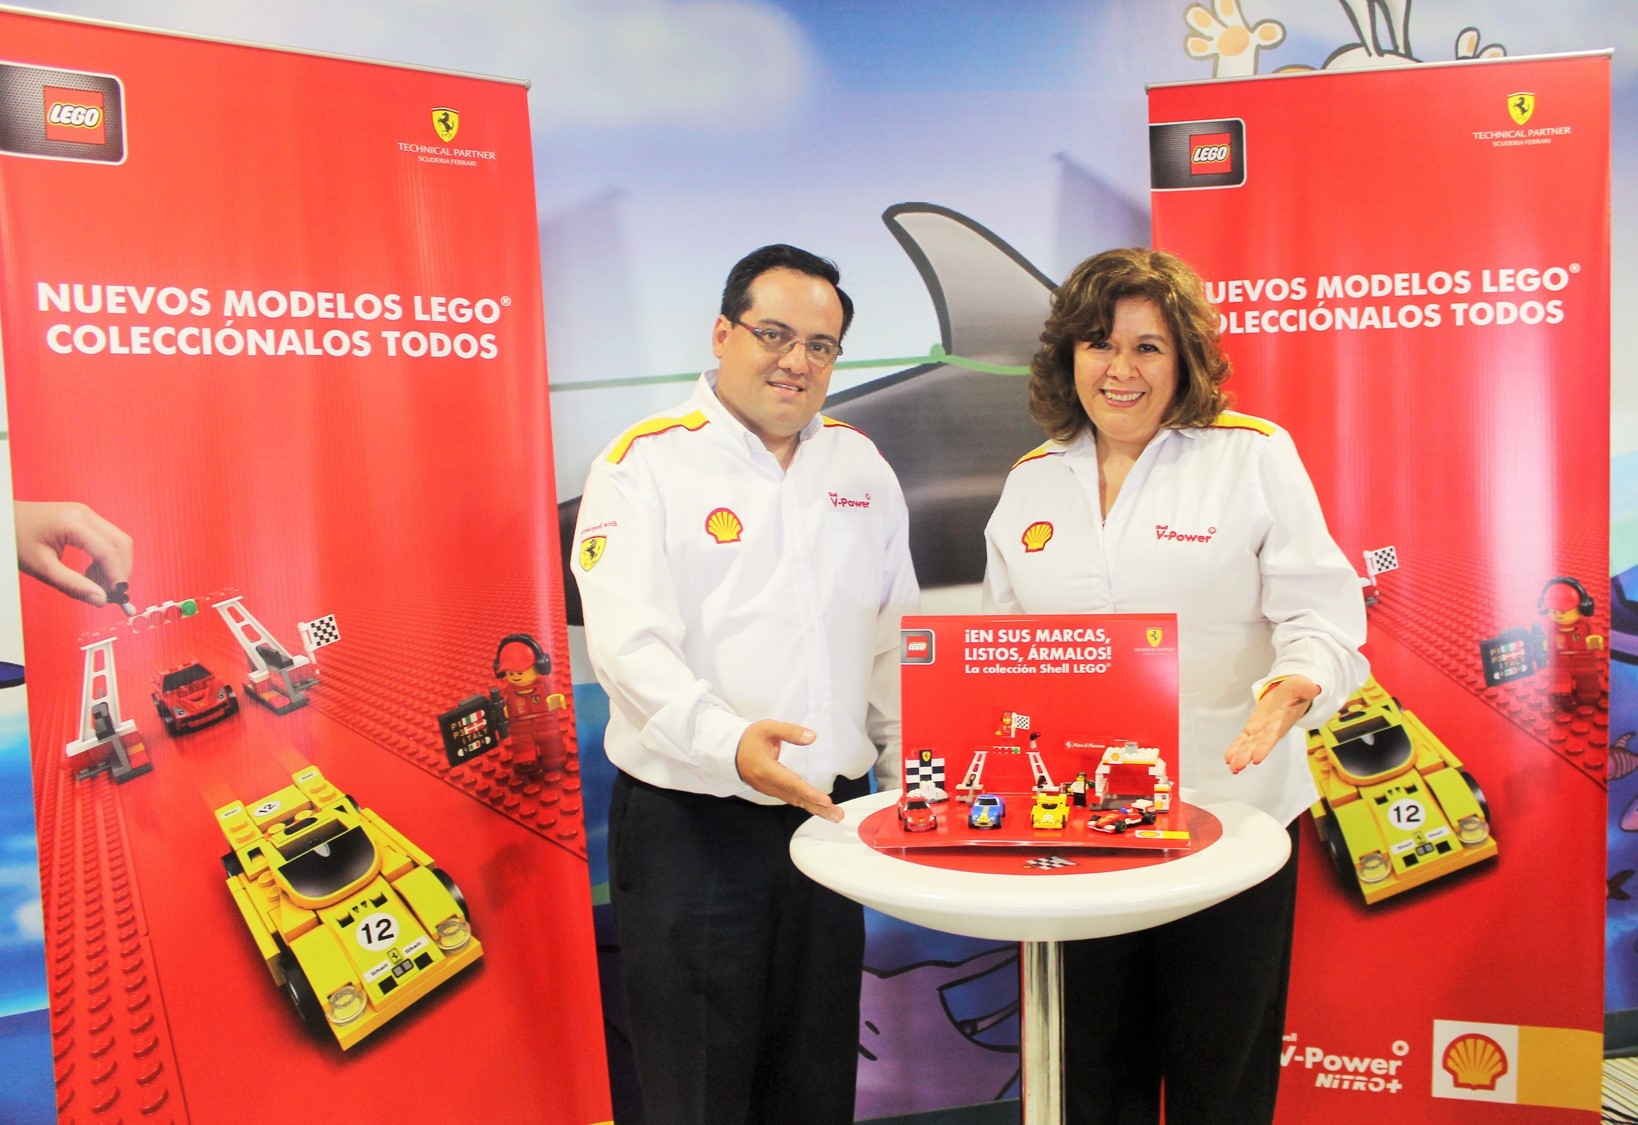 Colección exclusiva Shell Ferrari Lego en Guatemala